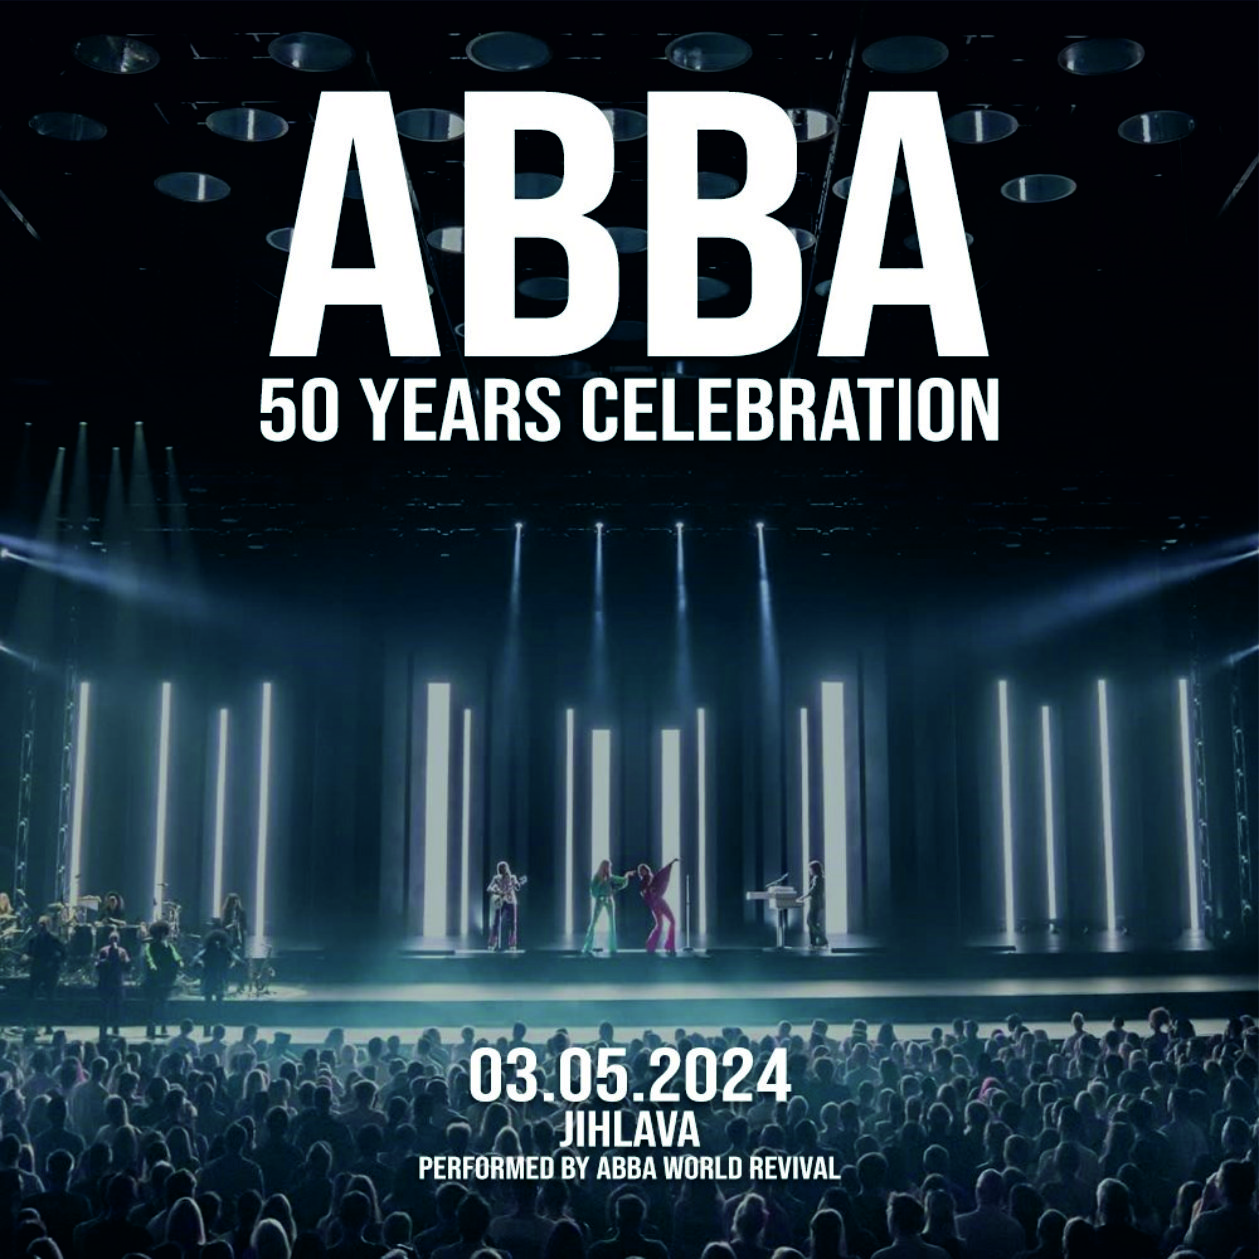 ABBA SHOW 50